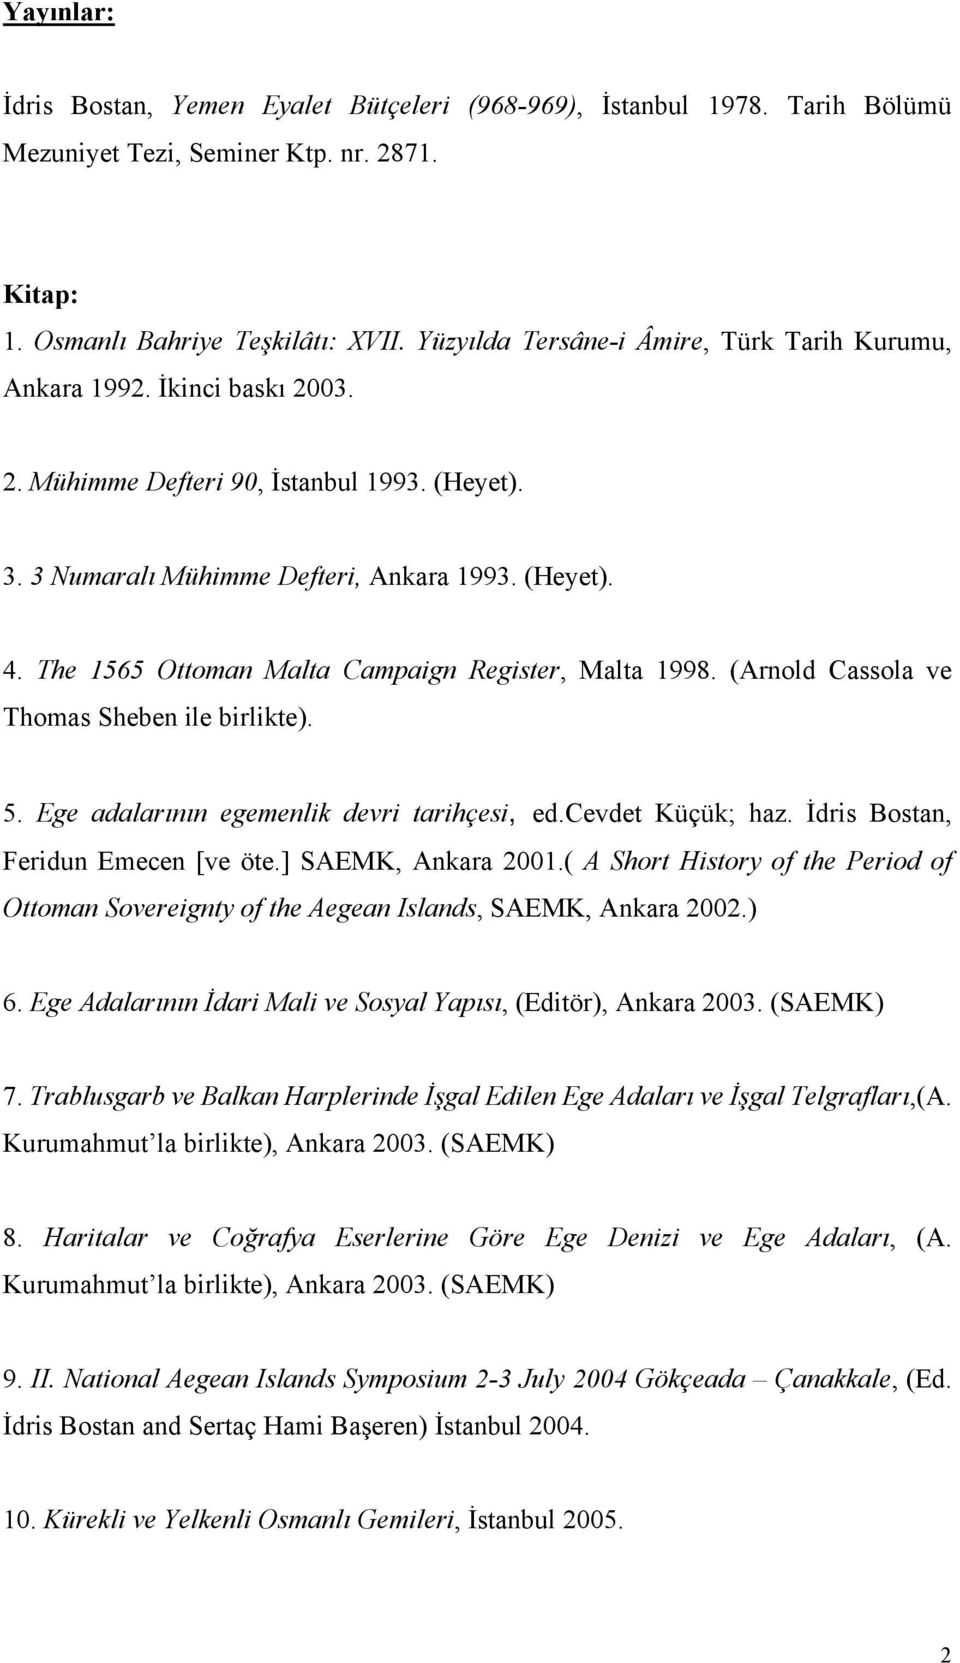 The 1565 Ottoman Malta Campaign Register, Malta 1998. (Arnold Cassola ve Thomas Sheben ile birlikte). 5. Ege adalarının egemenlik devri tarihçesi, ed.cevdet Küçük; haz.